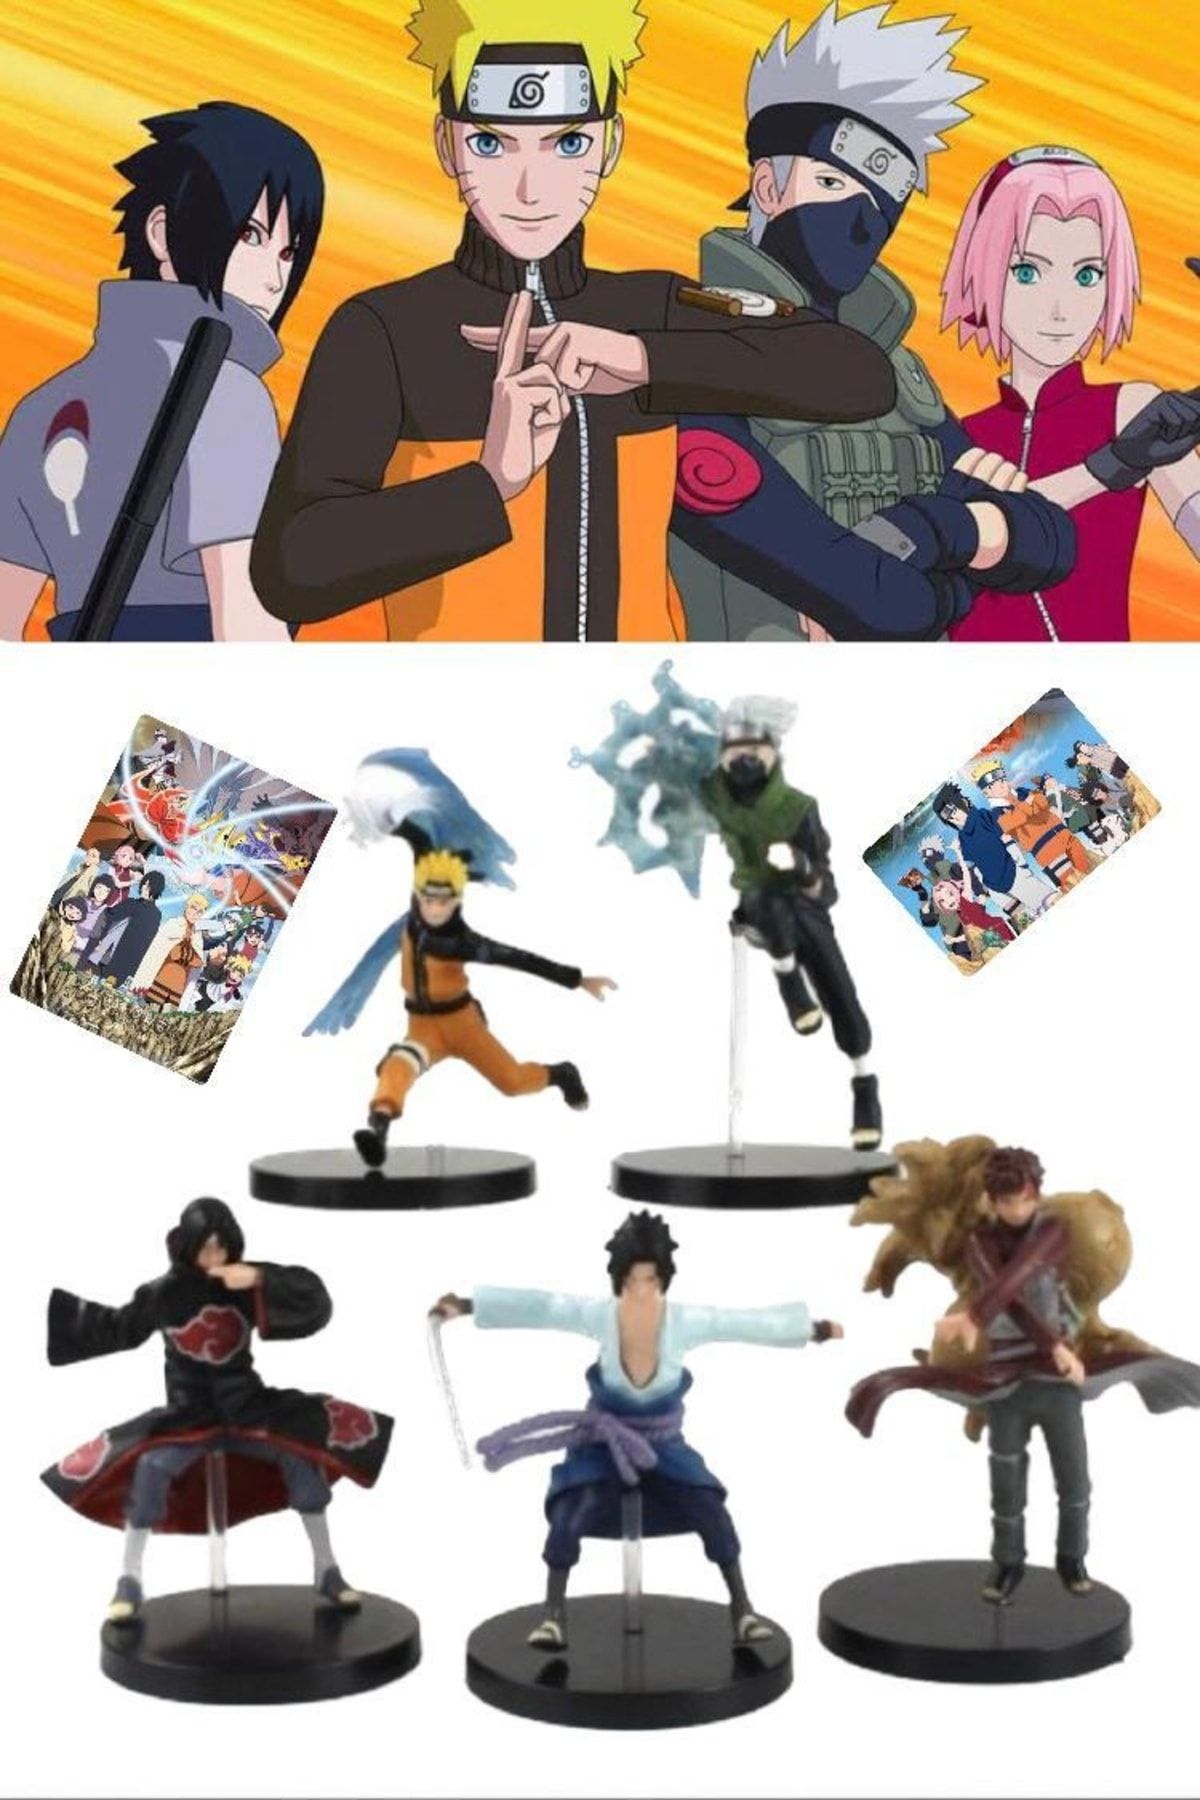 Utelips 5 Adet Büyük Boy Naruto Uzumaki Ve Anime Film Baş Kahramanlar Serisi Figür Heykel Seti Şık Hediyelik